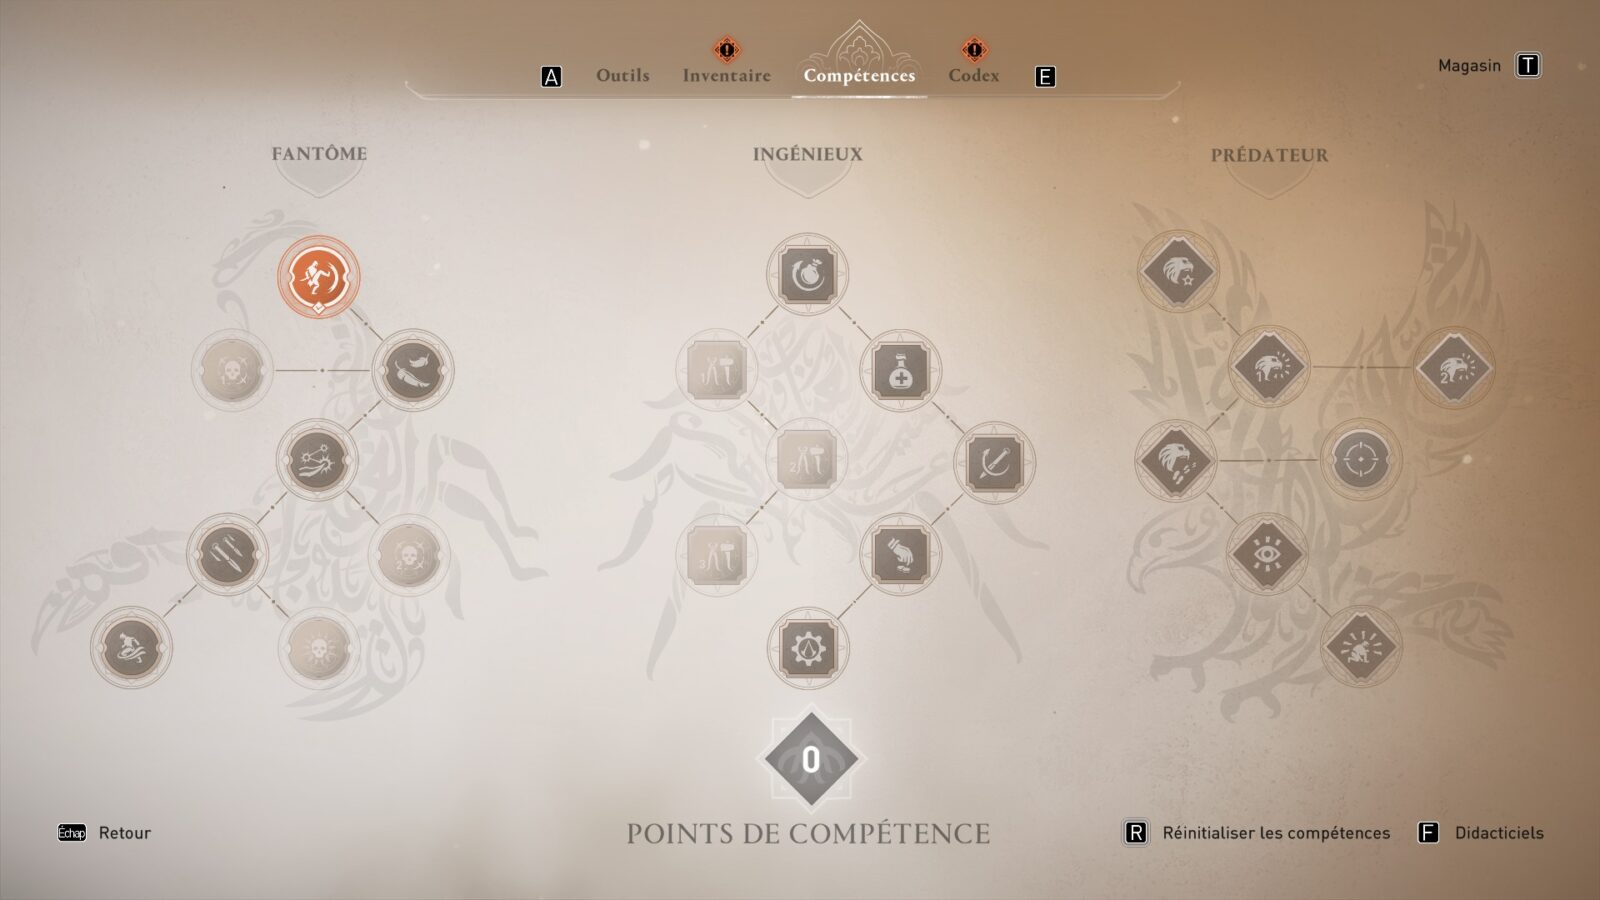 Assassin's Creed Mirage - Test : L'illusion ne prend pas comme prévu